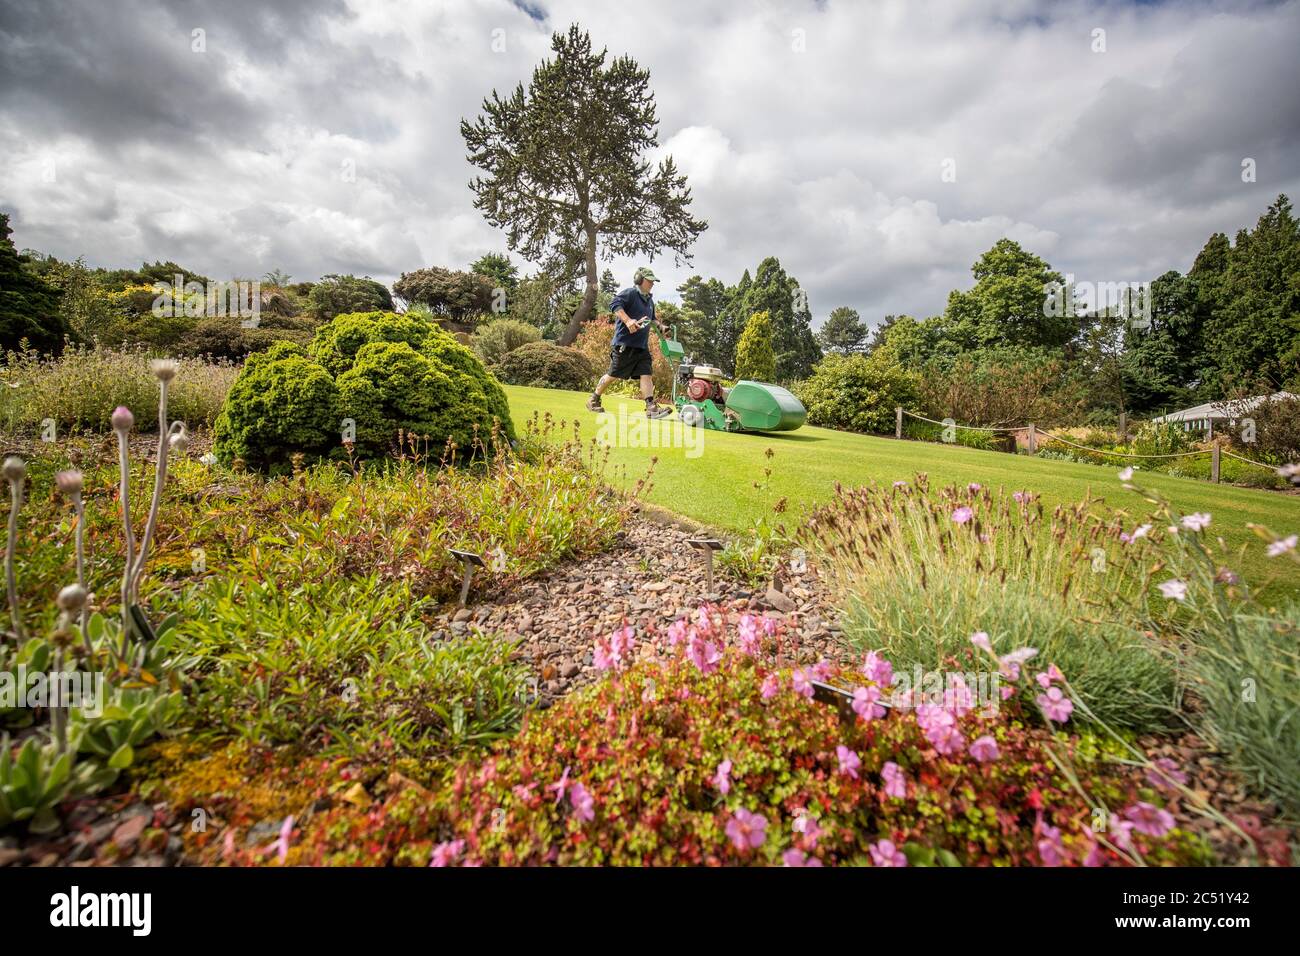 L'orticoltore maggiore Graeme McGillivray al lavoro nei giardini del Royal Botanic Garden di Edimburgo, prima della riapertura dei giardini al pubblico il 1 luglio, quando la Scozia si sposta nella seconda fase del suo piano in quattro fasi per facilitare l'uscita dal blocco. Foto Stock